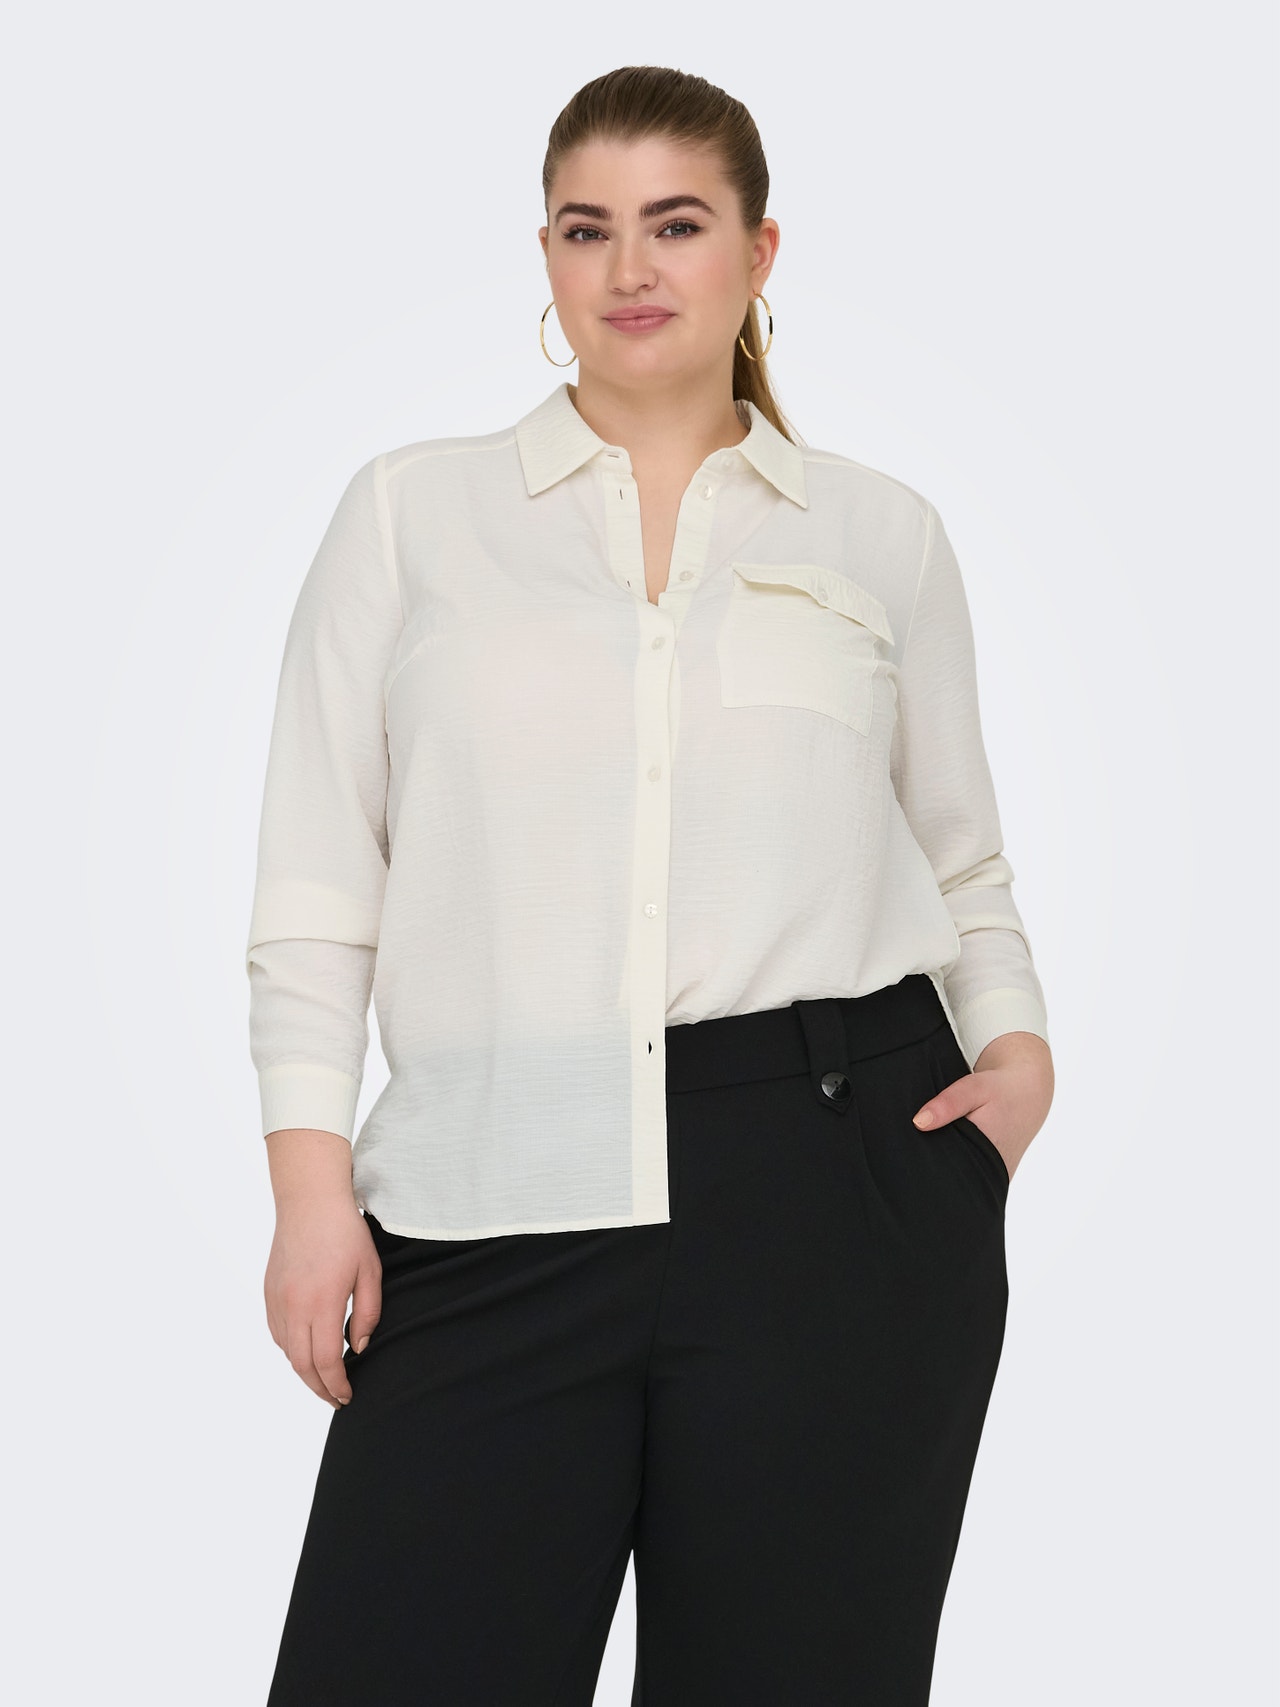 ONLY Regular Fit Shirt collar Shirt -Cloud Dancer - 15335765